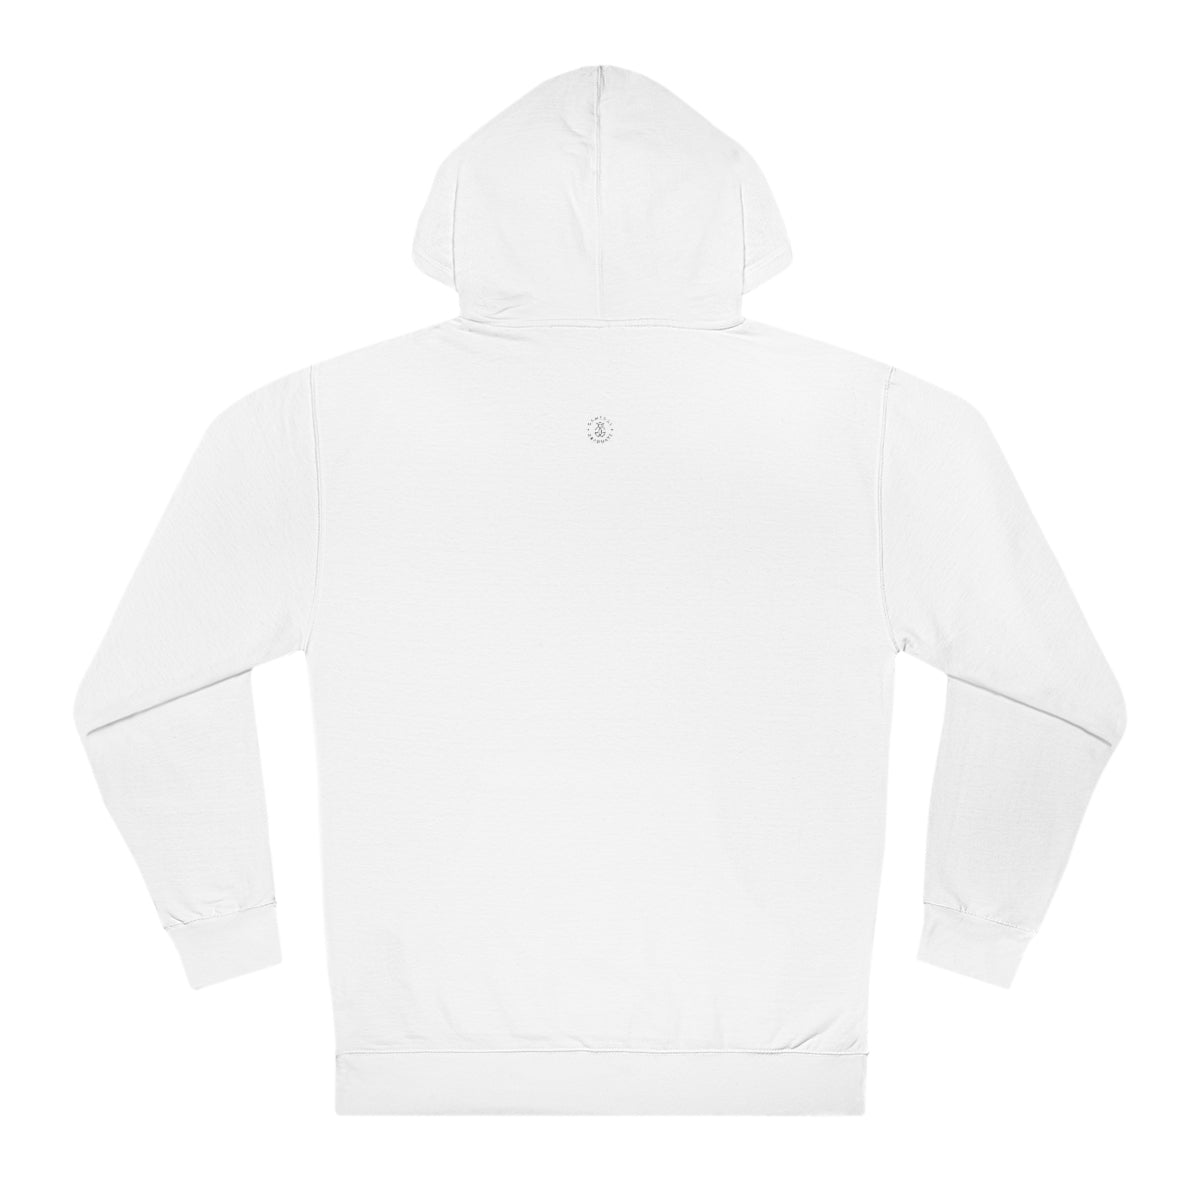 Smiley Lubbock Hooded Sweatshirt - GG - ITC